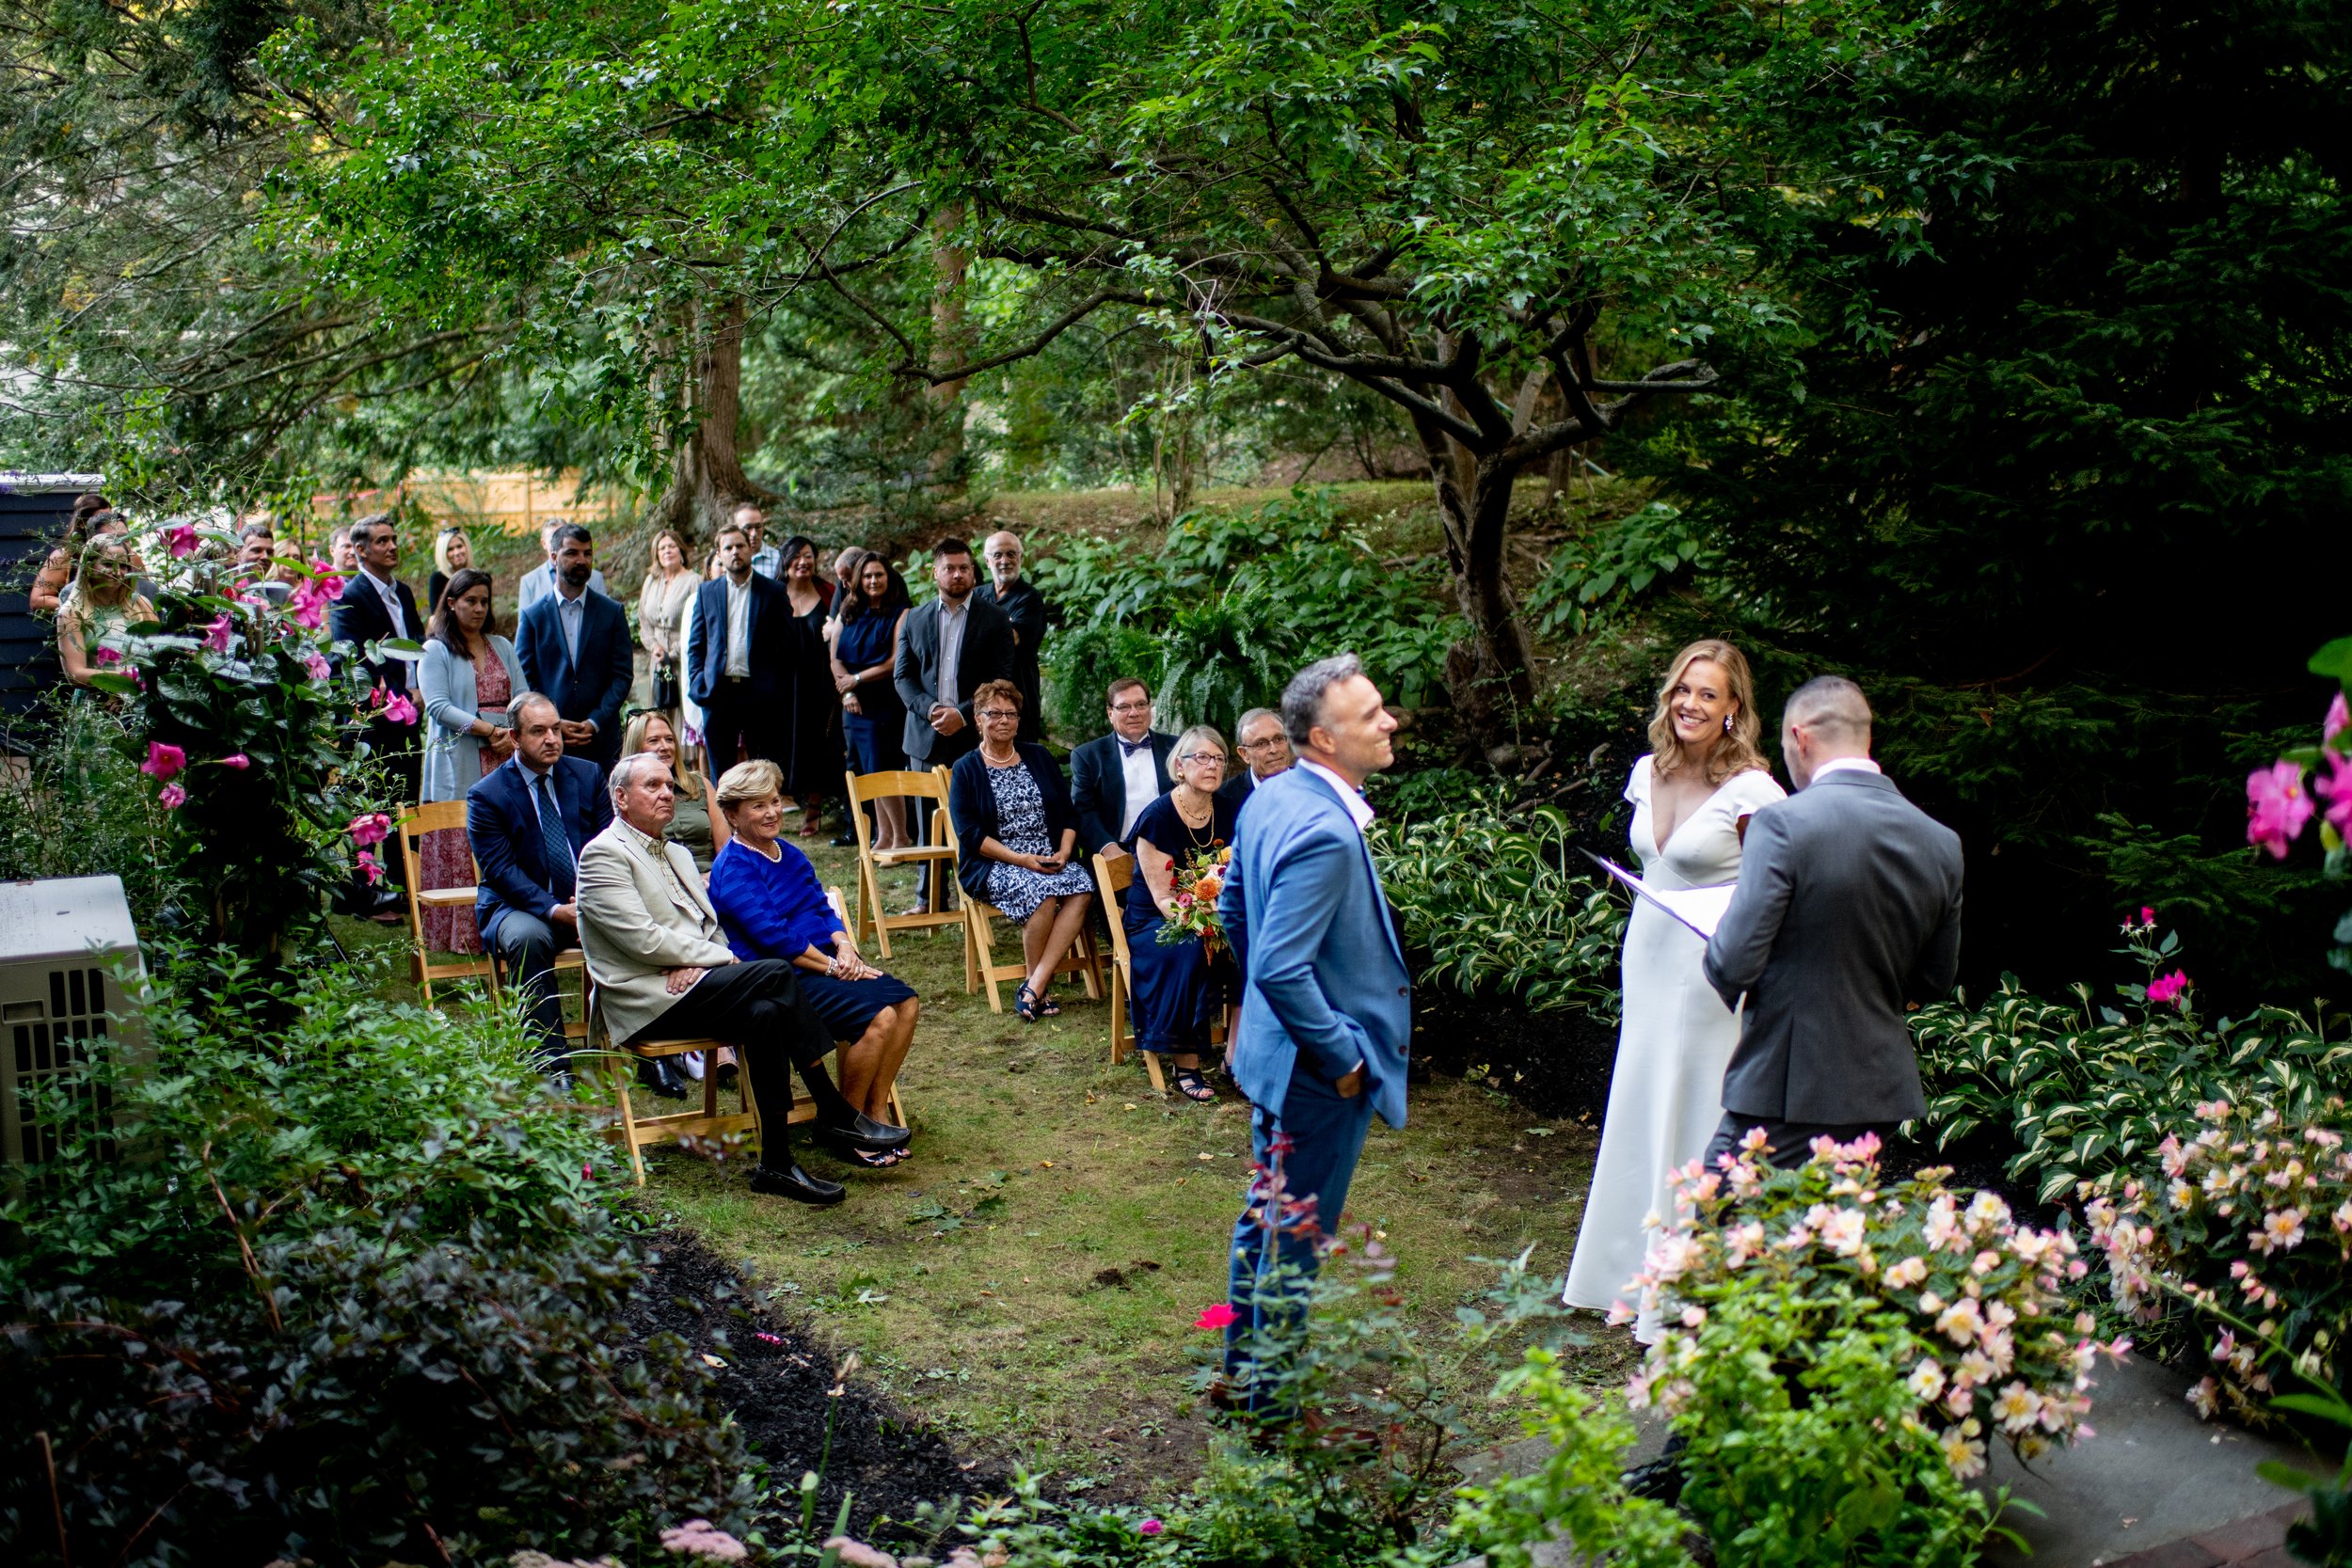  Backyard Wedding, Intimate Wedding, Backyard Wedding Ceremony 